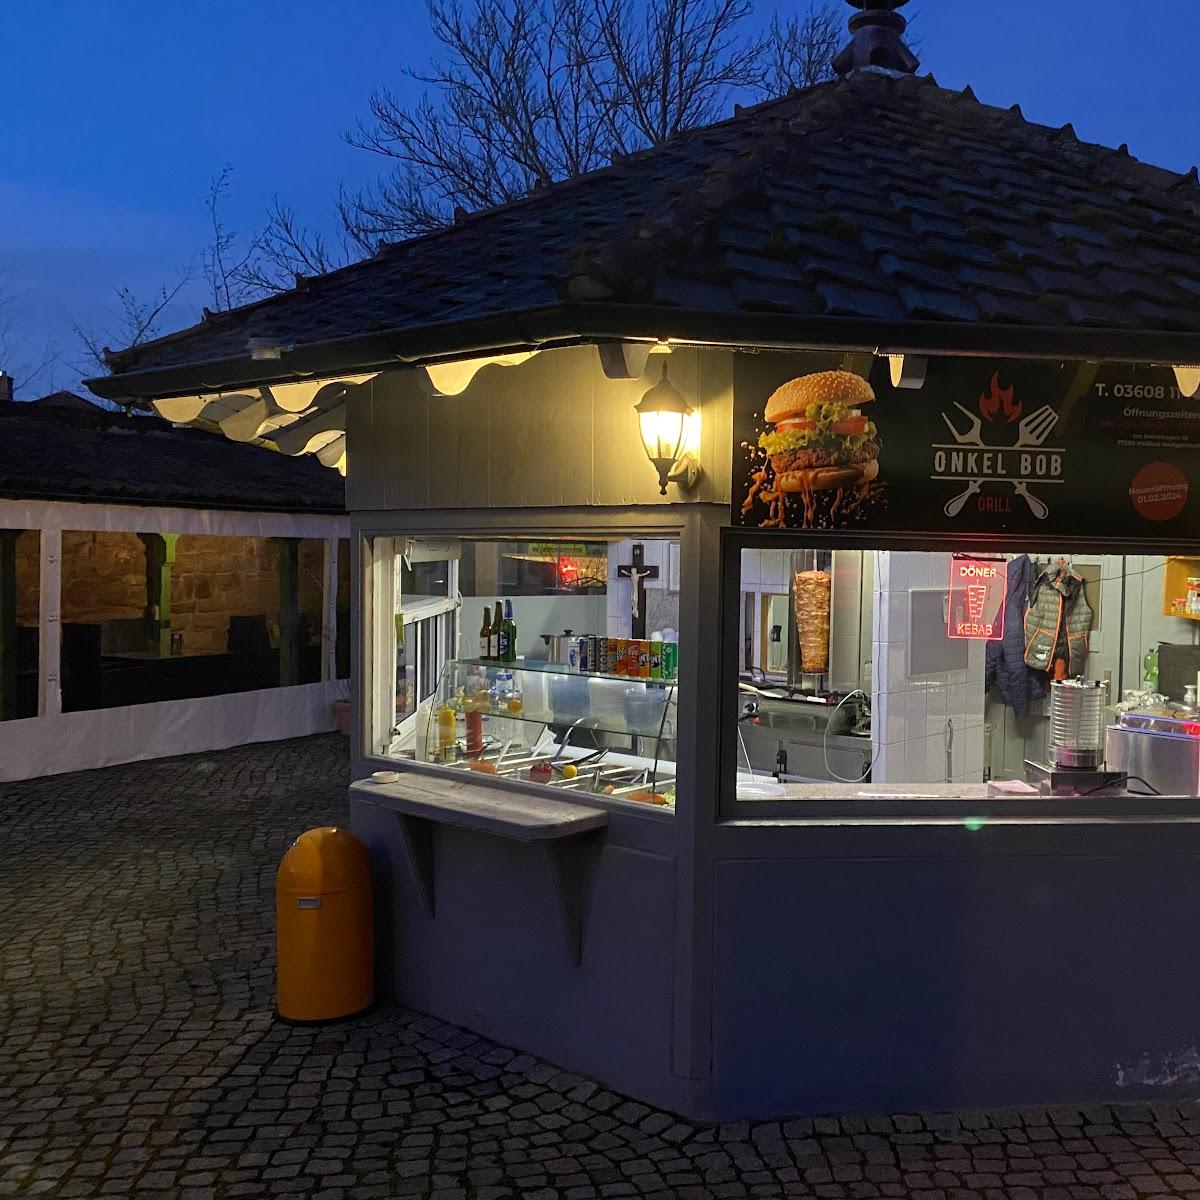 Restaurant "Onkel Bob Grill" in Heilbad Heiligenstadt